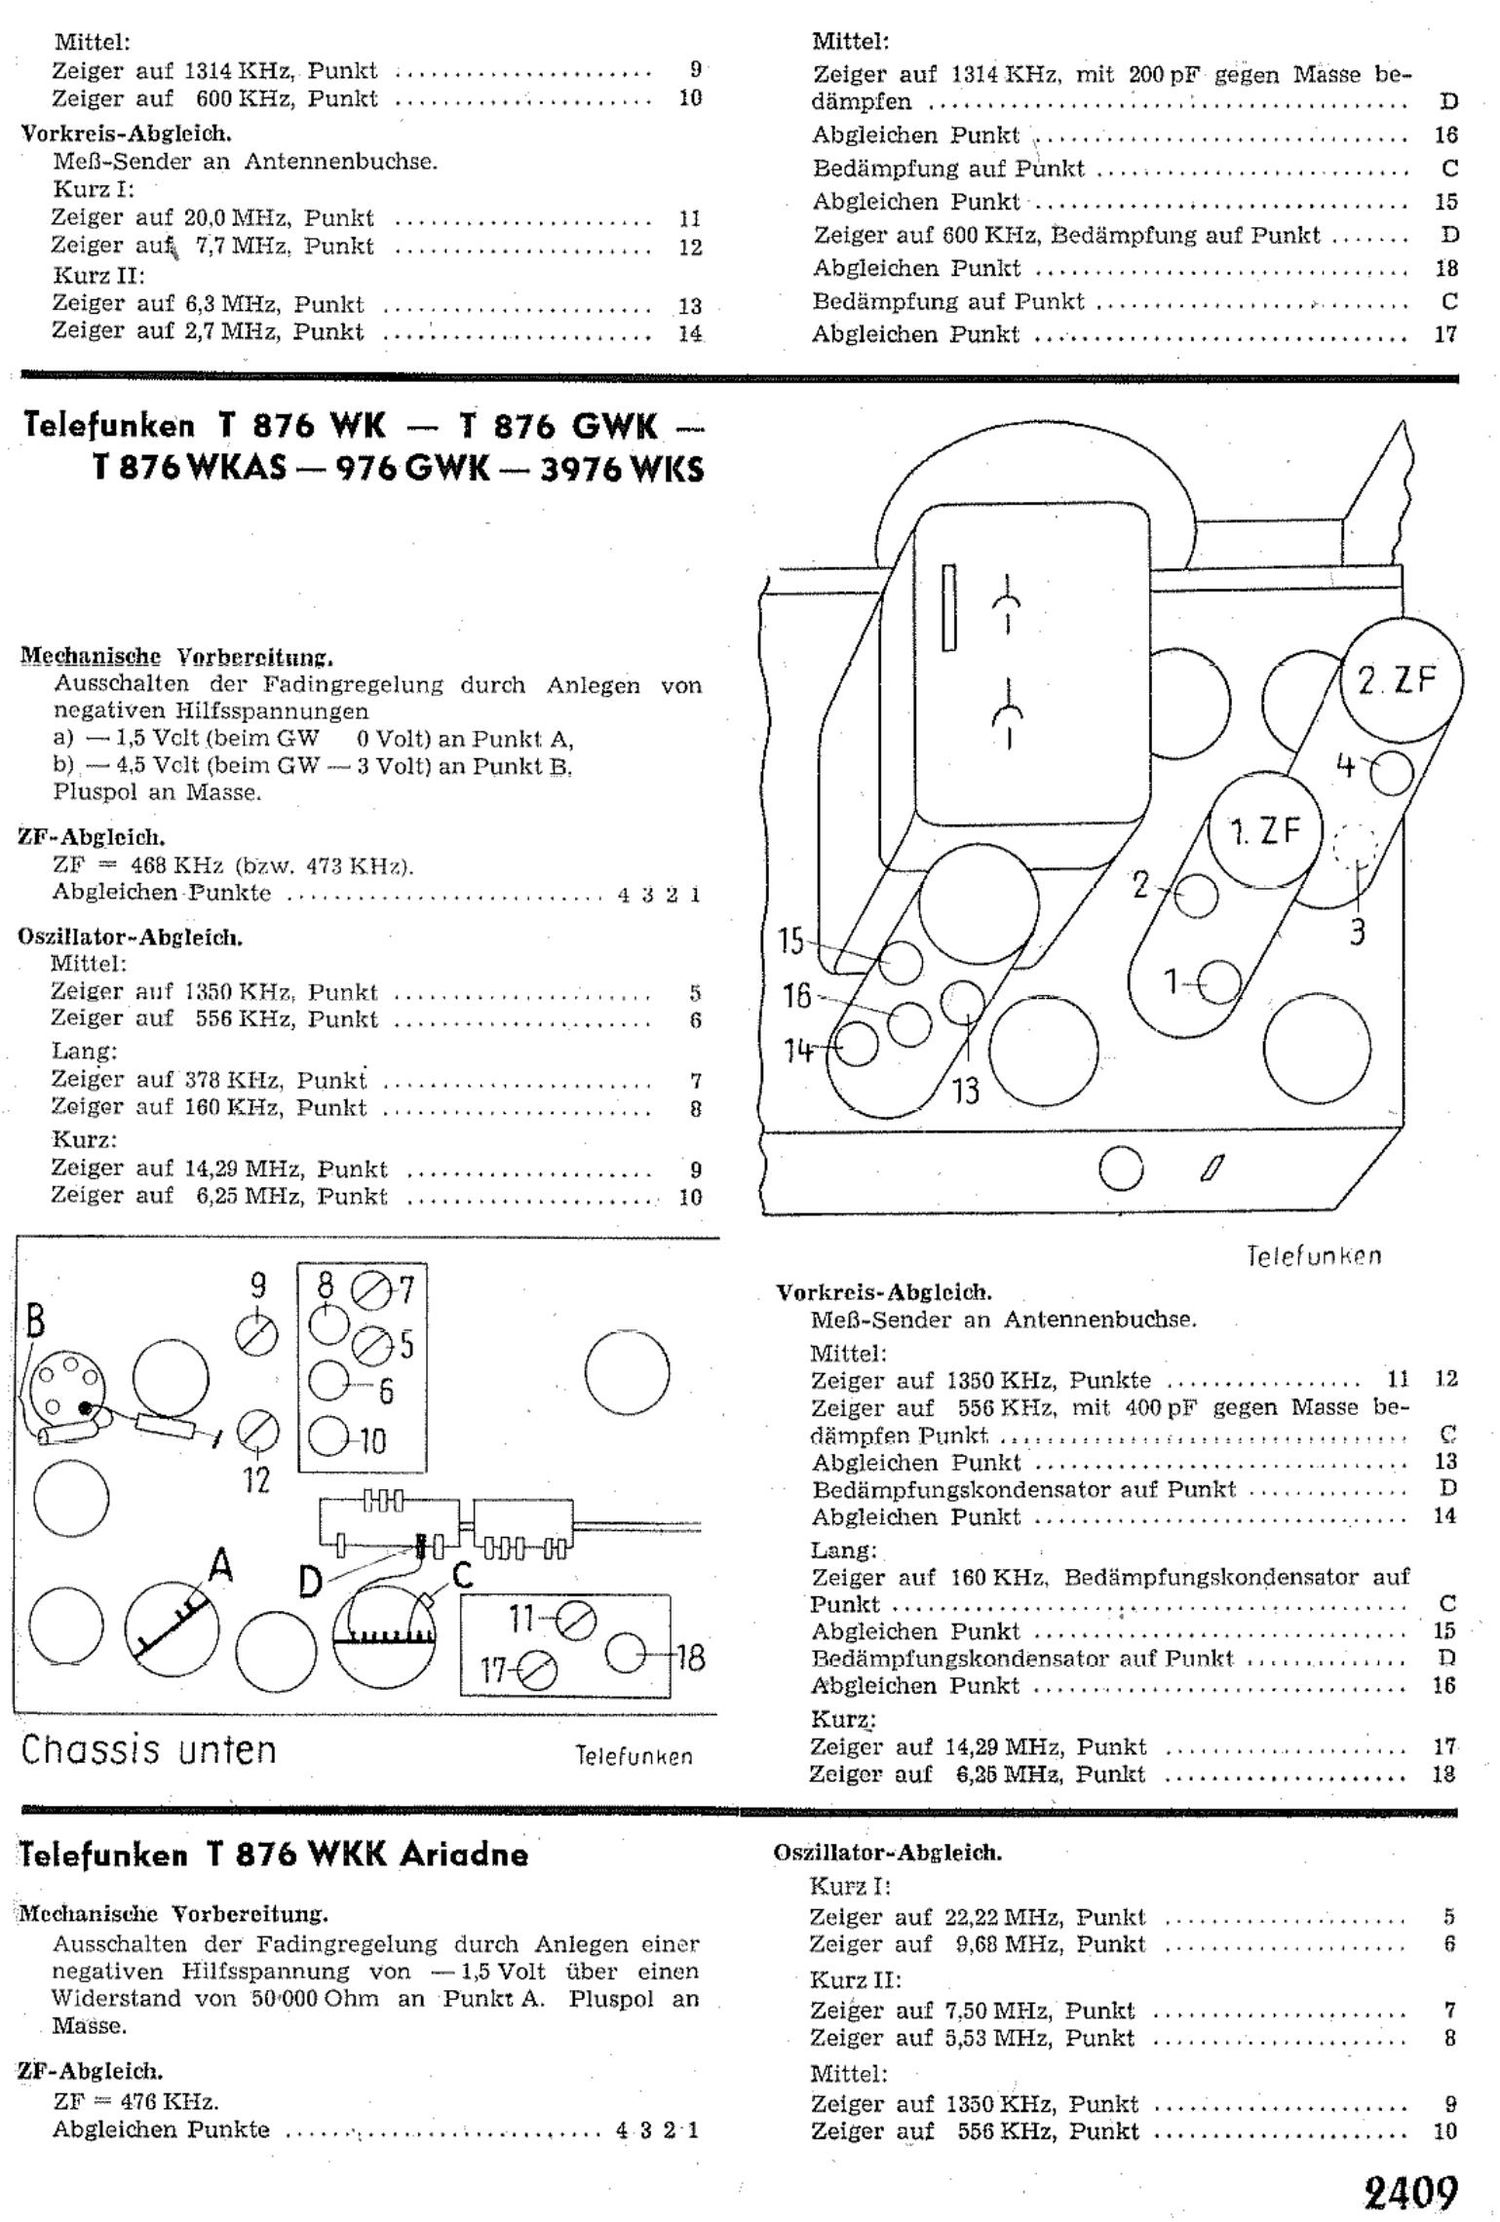 Telefunken T876 Schematic